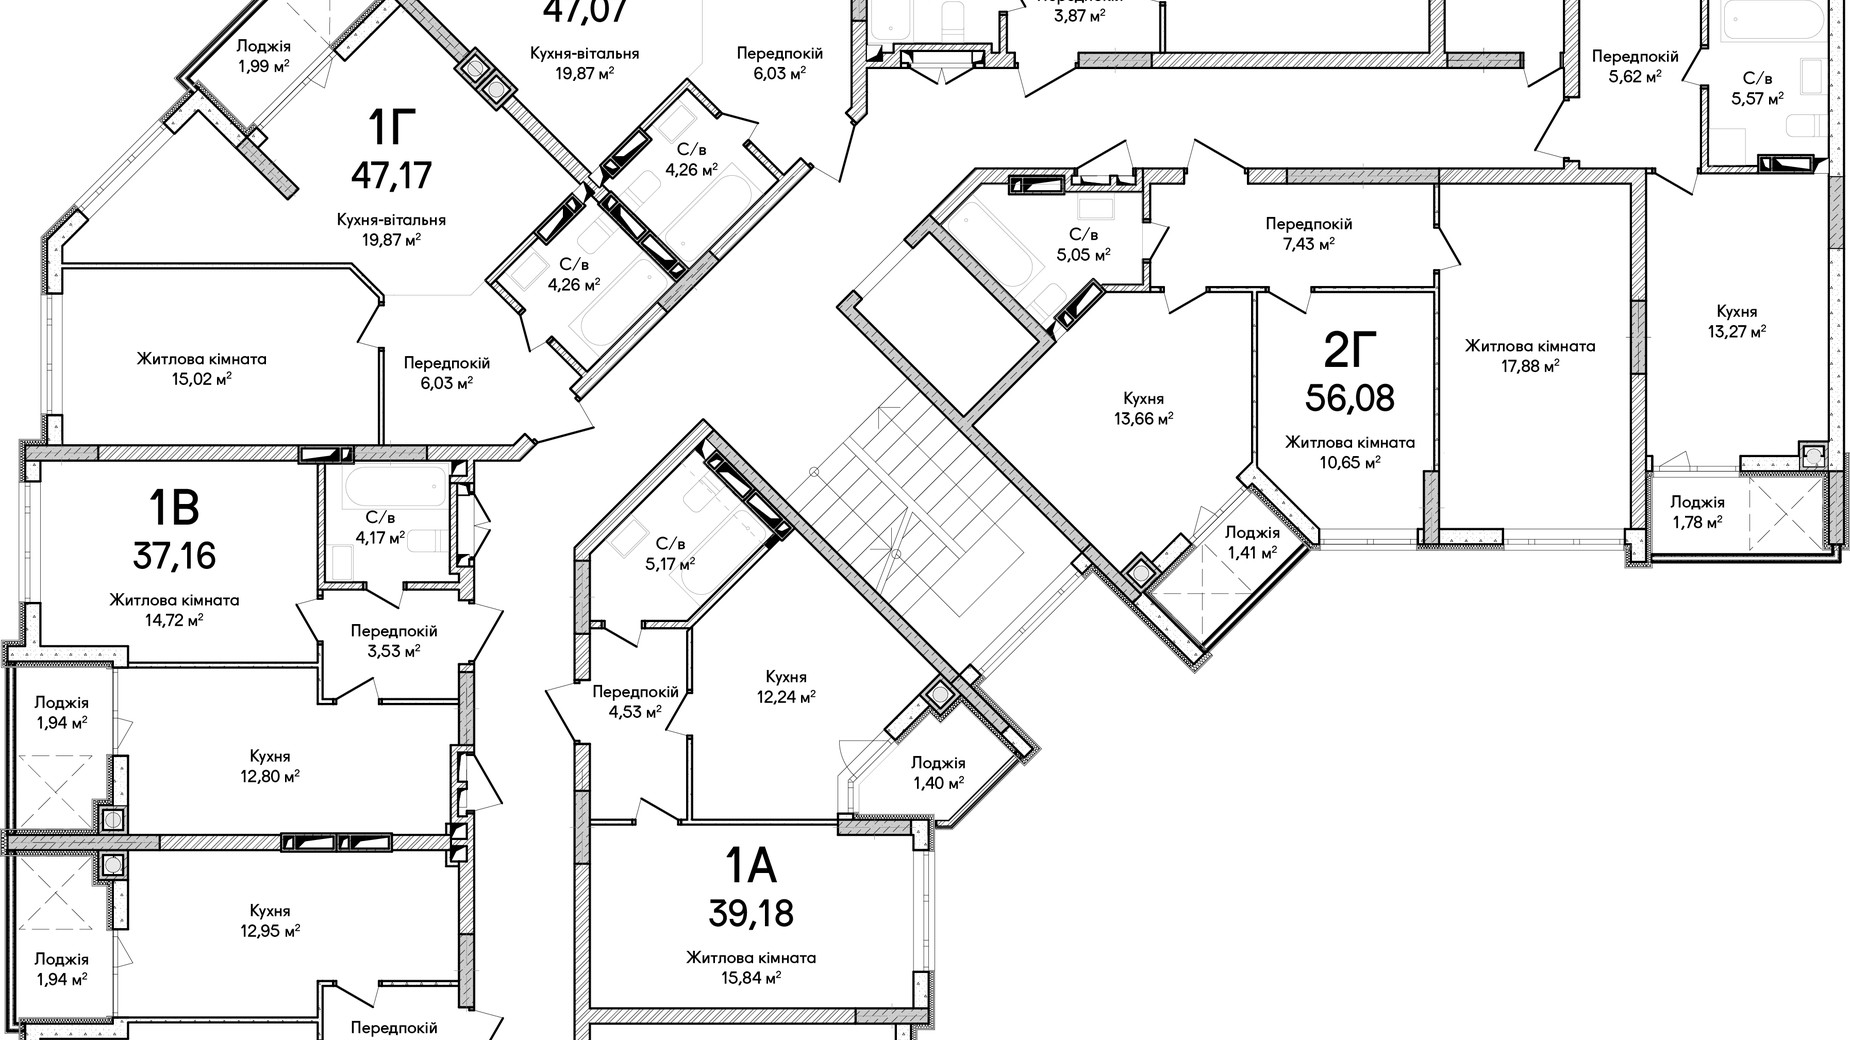 Планировка много­уровневой квартиры в ЖК Синергия Сити 57 м², фото 659521